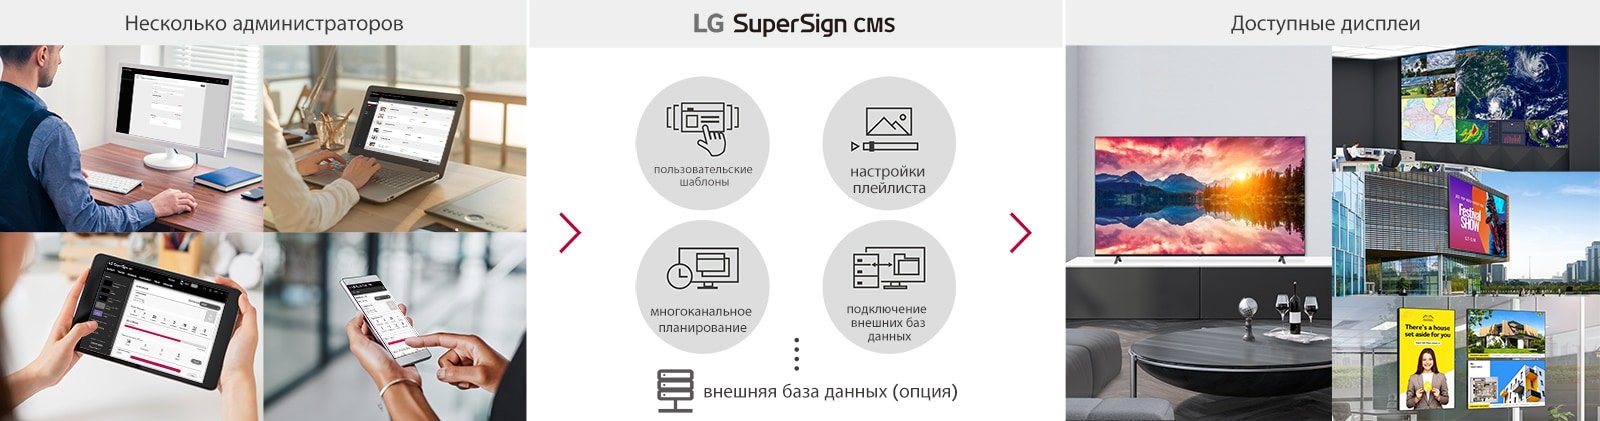 Несколько администраторов могут использовать CMS LG SuperSign с ПК, ноутбука, планшета и мобильных устройств для создания, настройки и распределения цифрового контента, подготовленного для разных дисплеев.